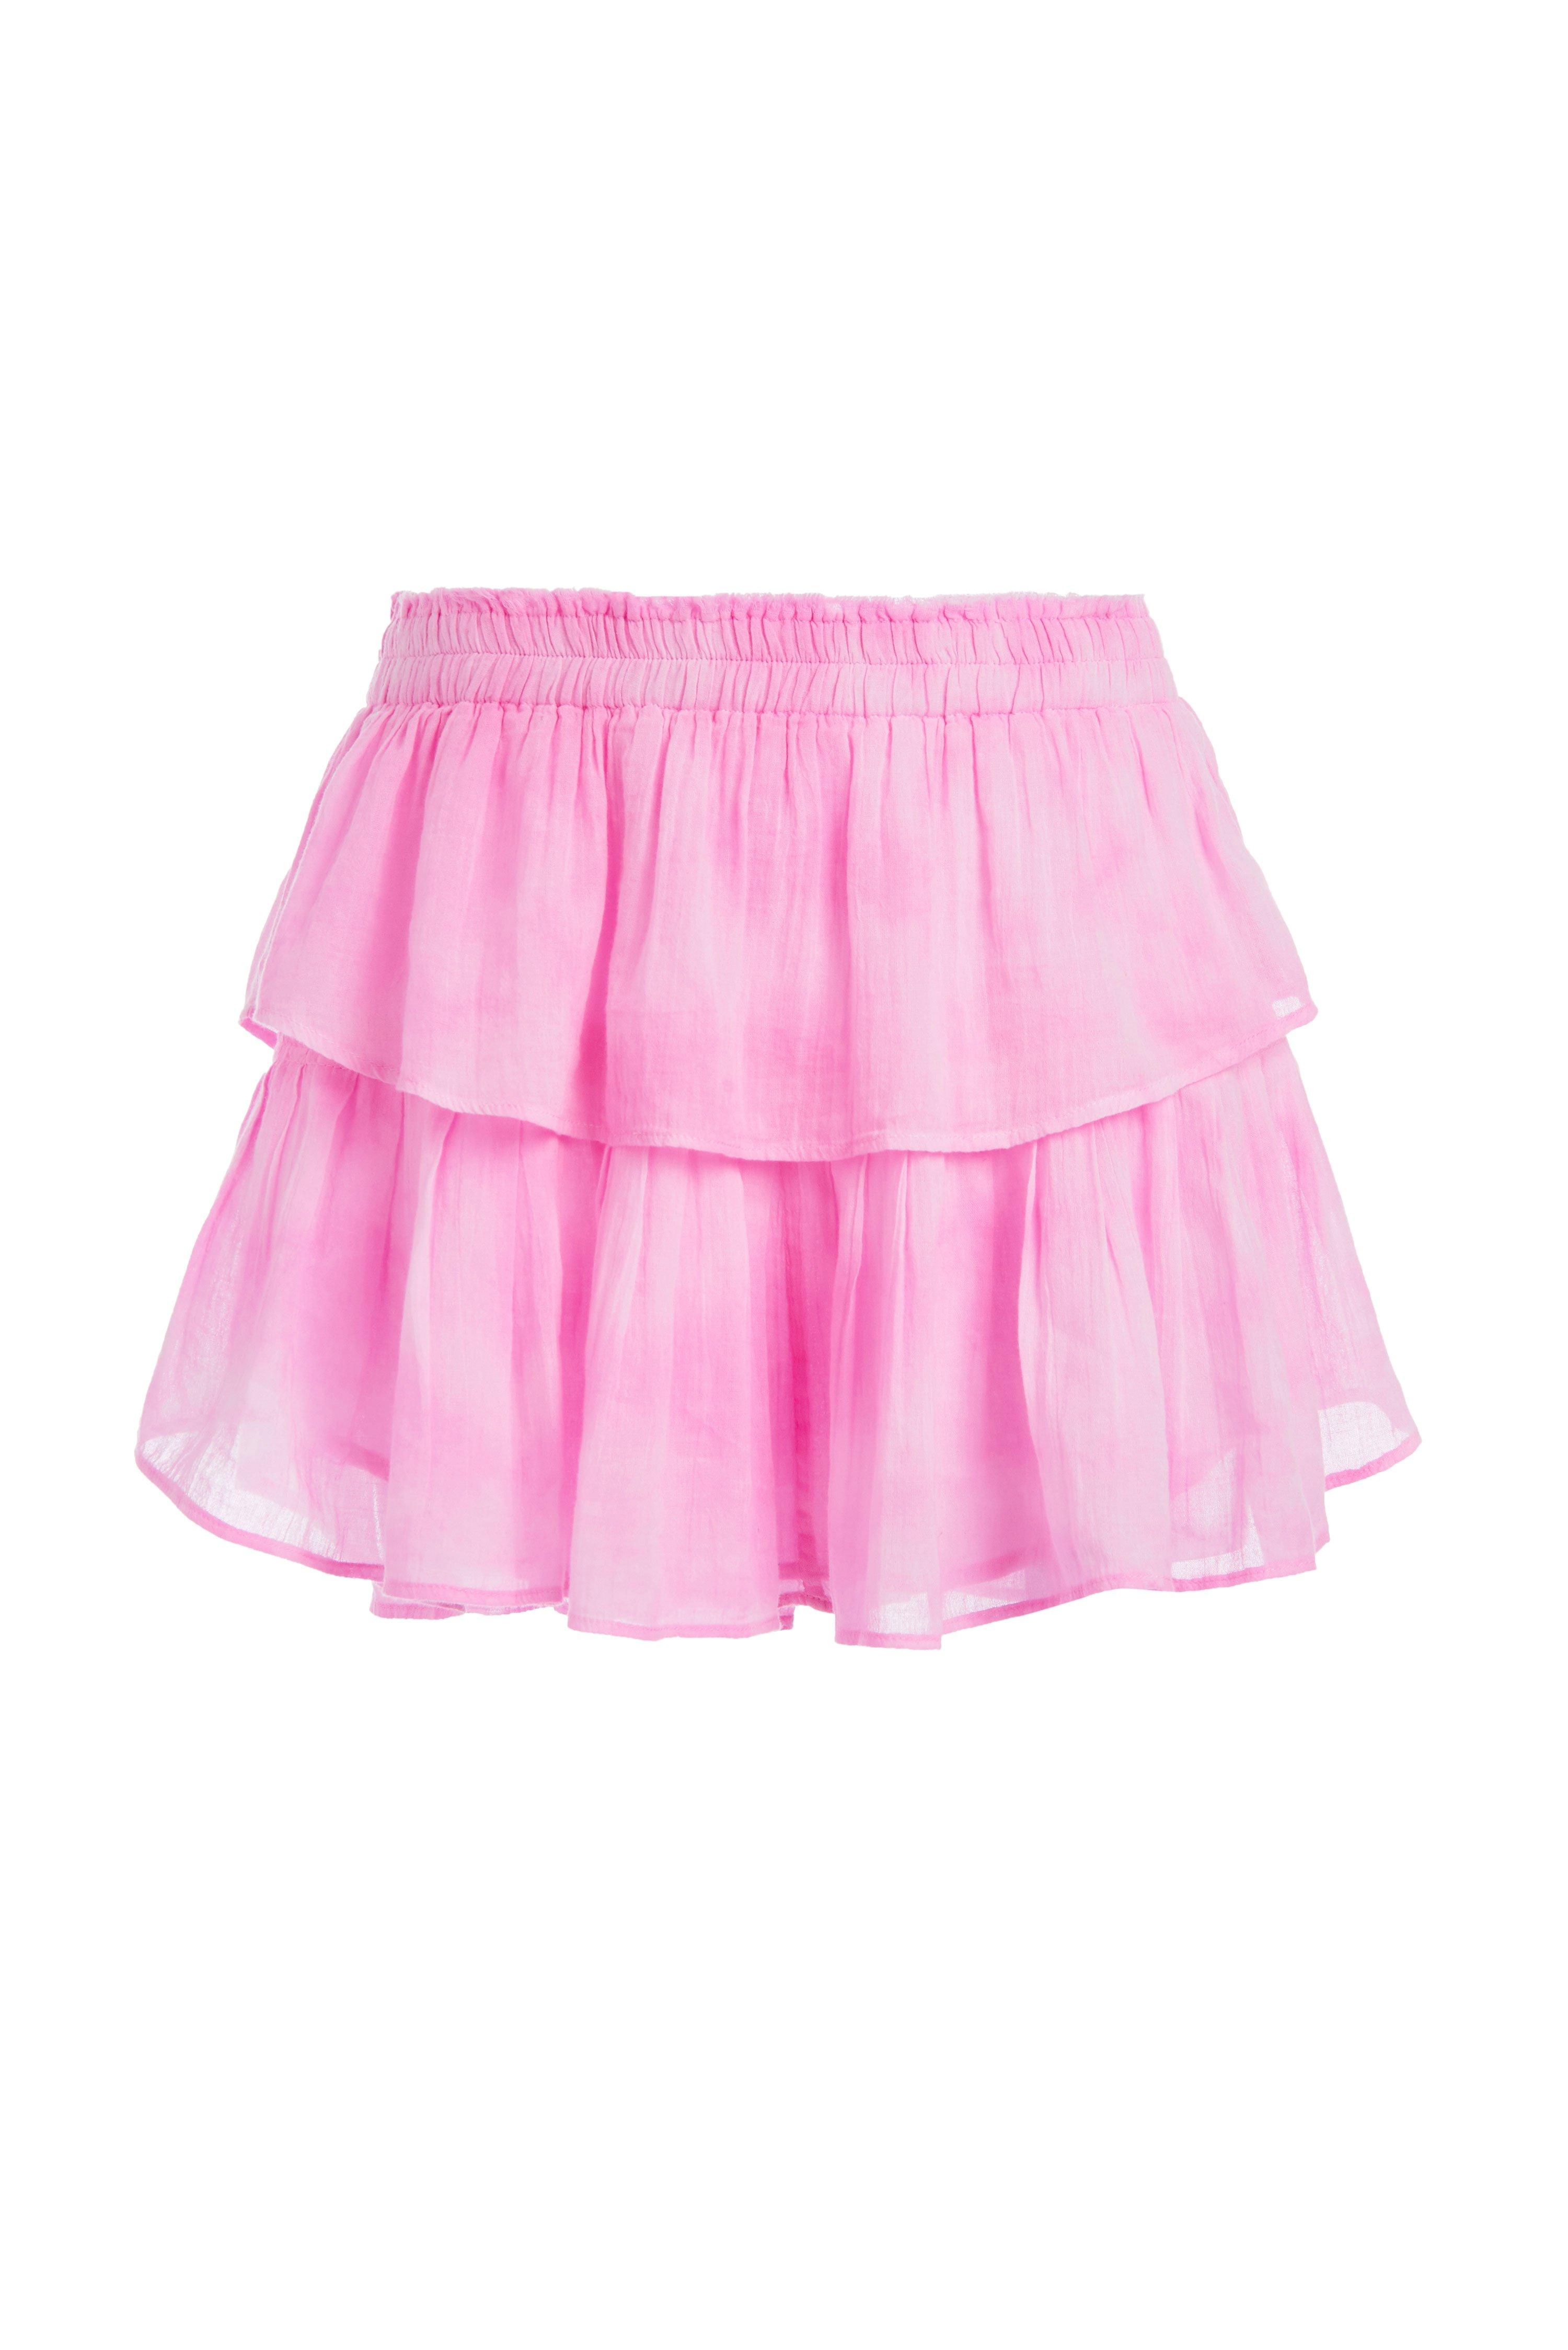 LoveShackFancy Ruffle Mini Skirt in Pink - Lyst